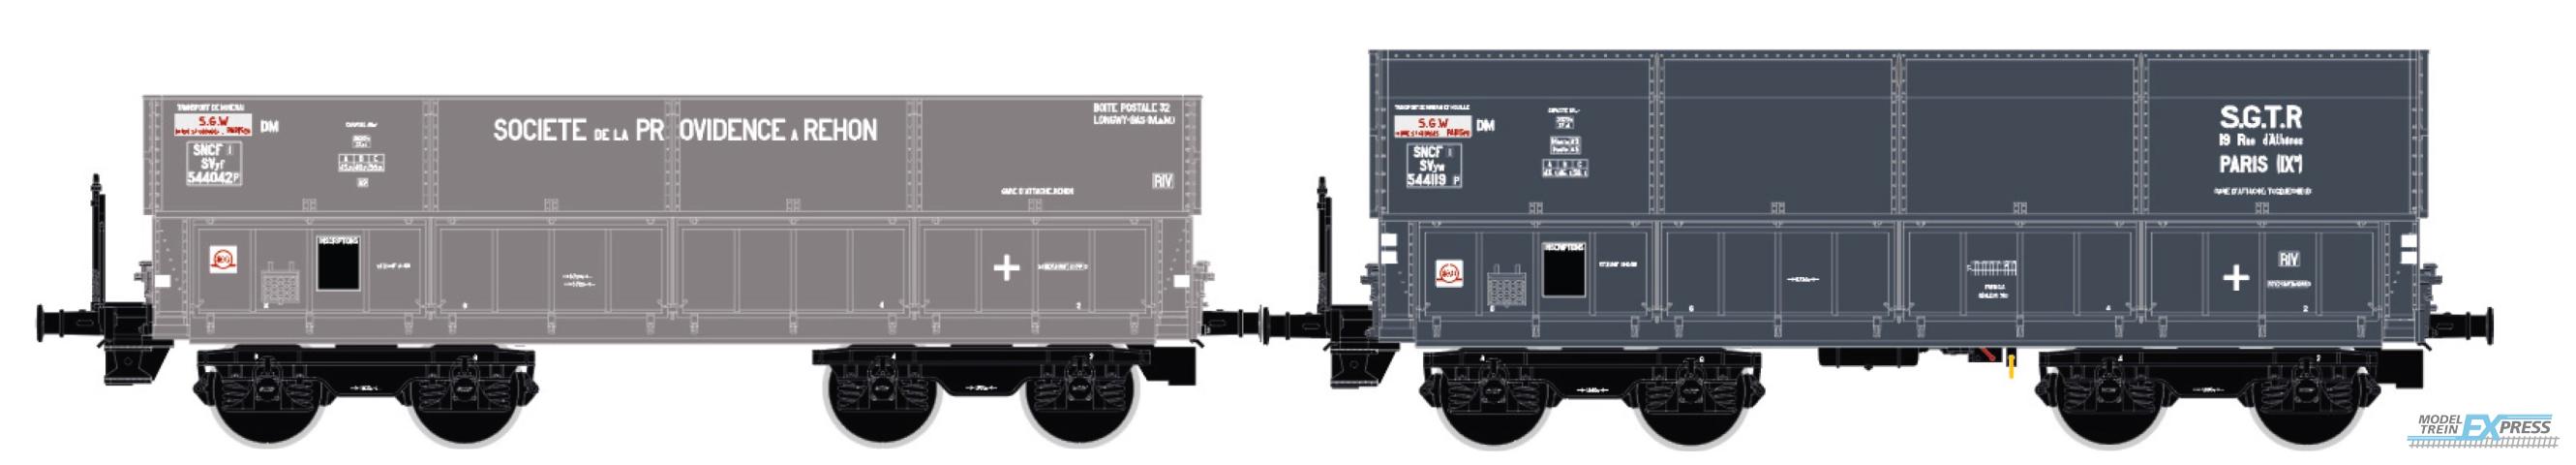 LS Models 31109 DM + DMH, "Rehon / S.G.T.R." / Ep. III / SNCF / HO / DC / 2 P.